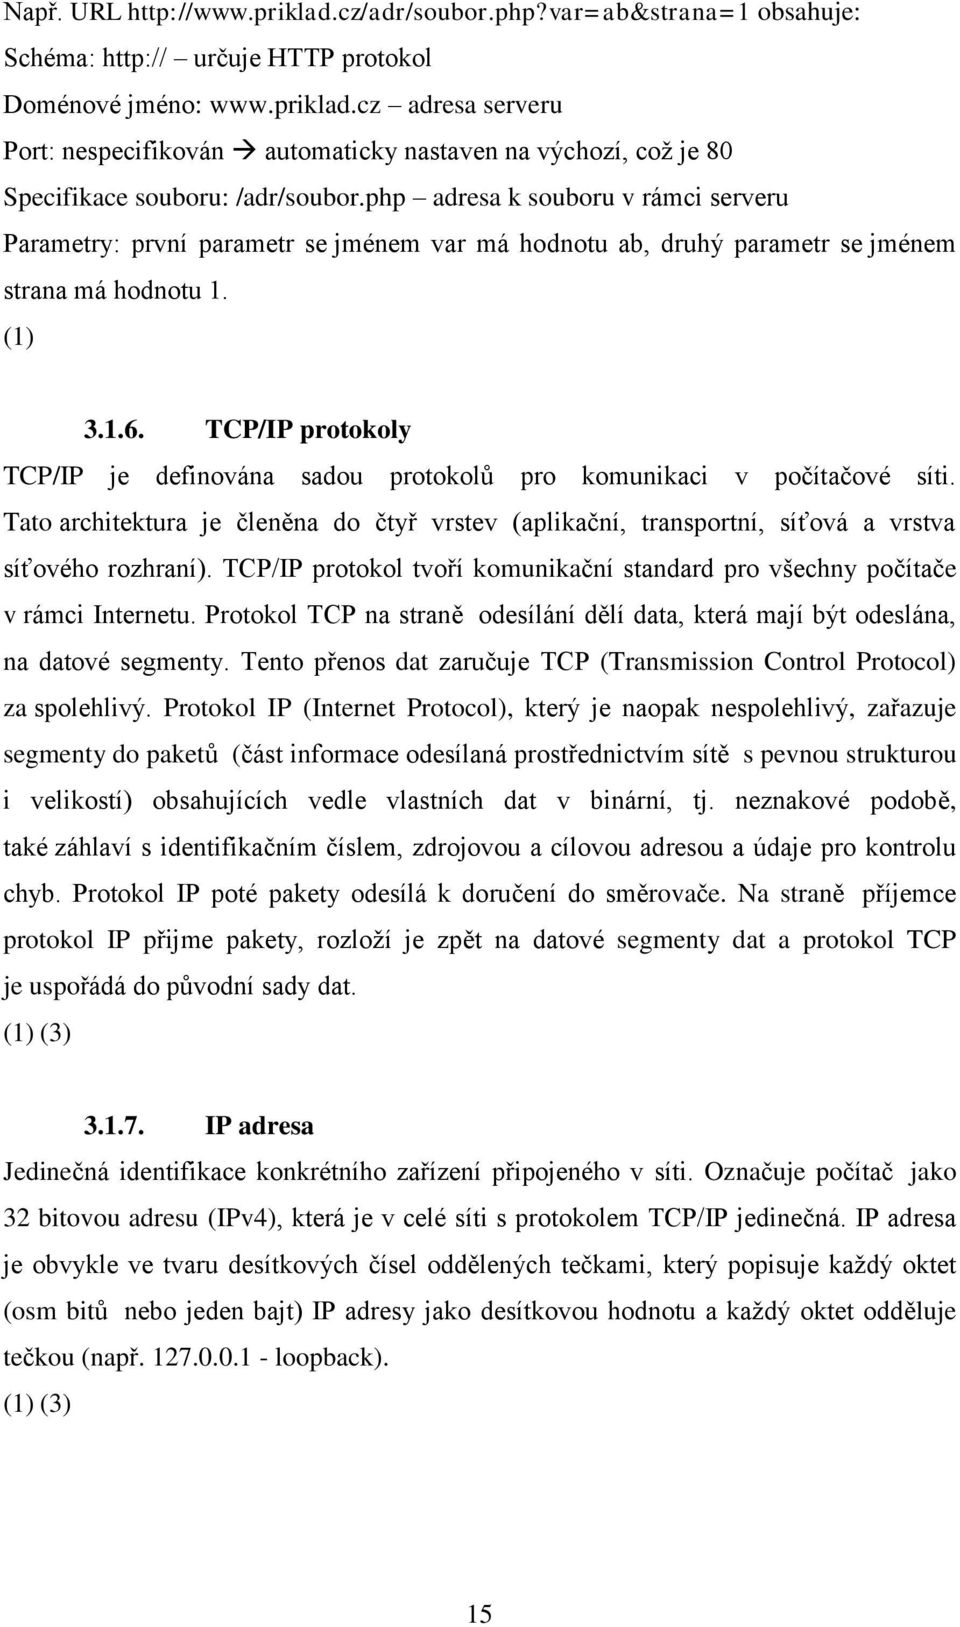 TCP/IP protokoly TCP/IP je definována sadou protokolů pro komunikaci v počítačové síti. Tato architektura je členěna do čtyř vrstev (aplikační, transportní, síťová a vrstva síťového rozhraní).